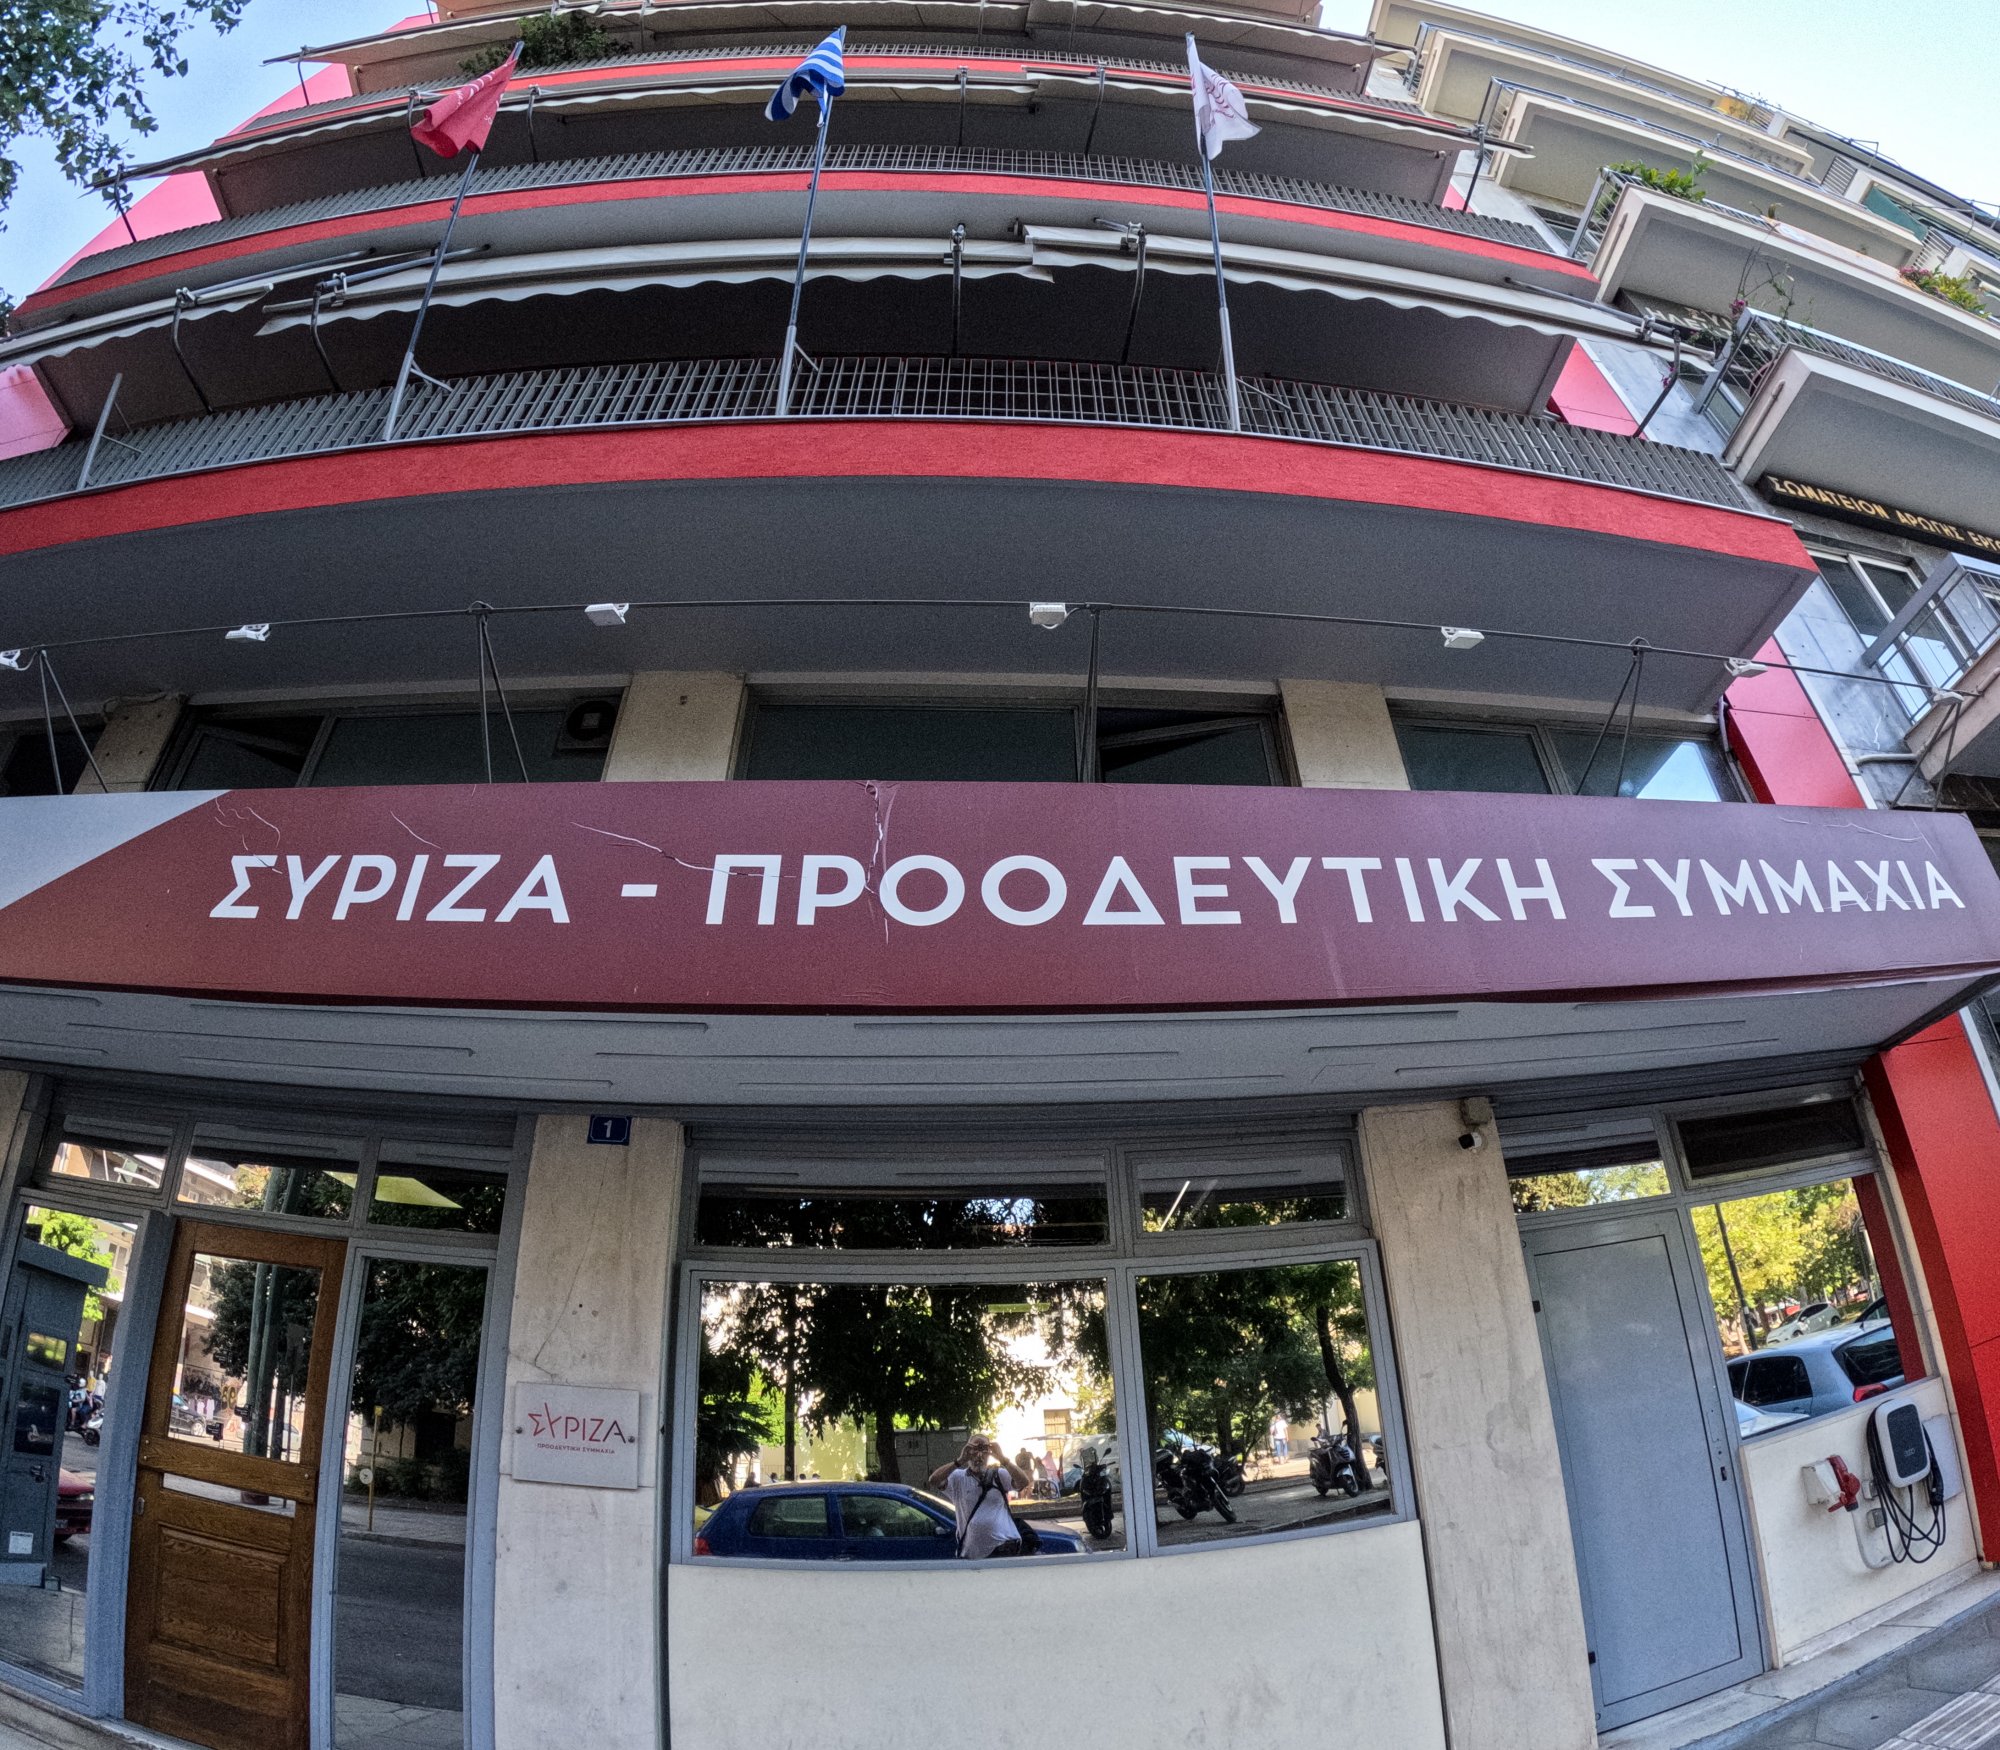 ΣΥΡΙΖΑ: Ξεκινά ανοίγματα με φορείς, συνδικάτα – Τι λένε για ΠΑΣΟΚ και συγκλίσεις